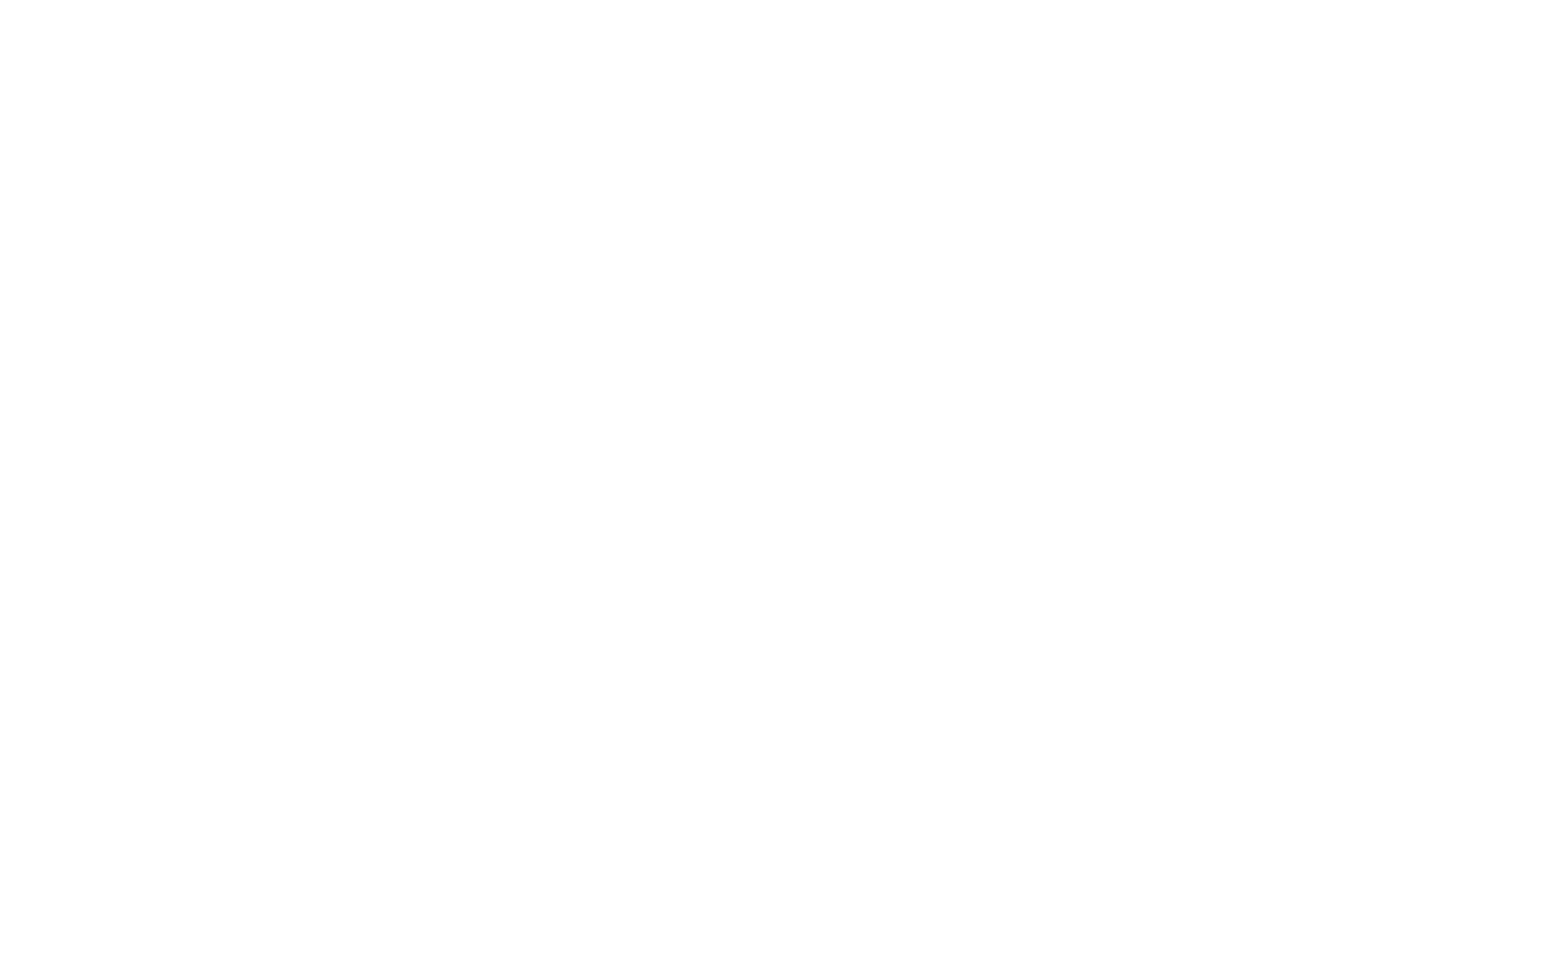 Sweetgreen logo for dark backgrounds (transparent PNG)